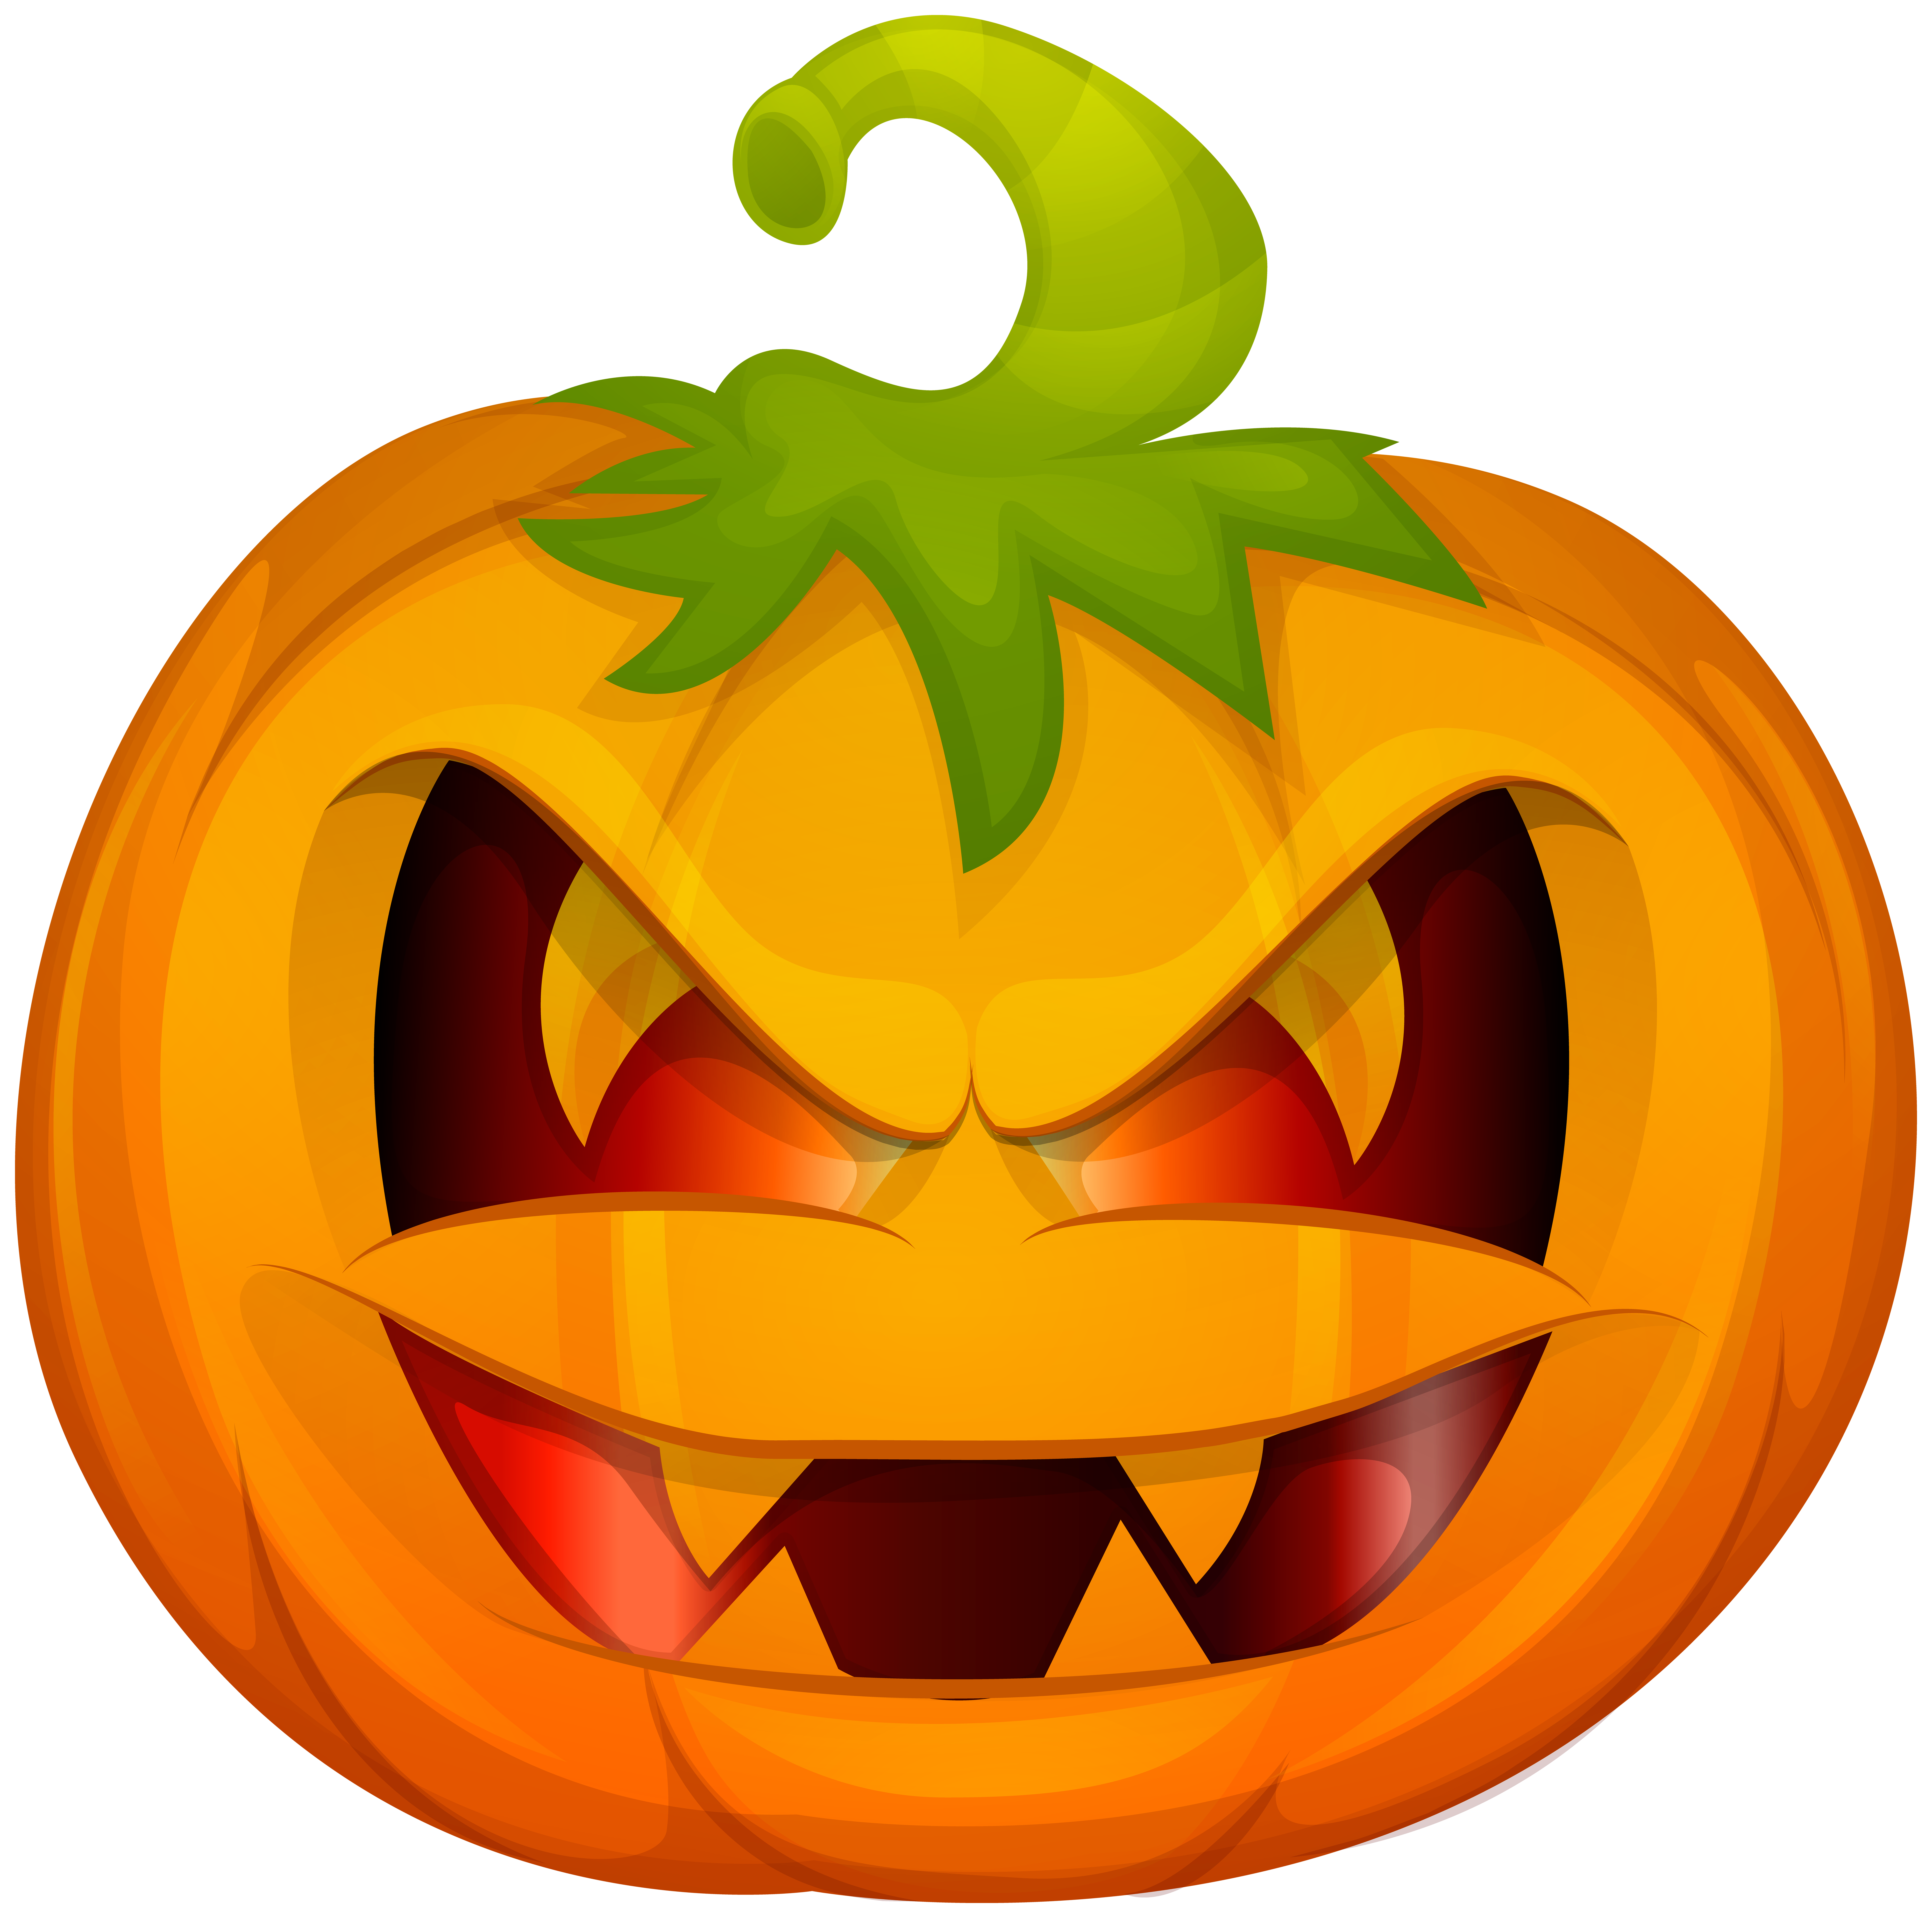 halloween pumpkin clip art